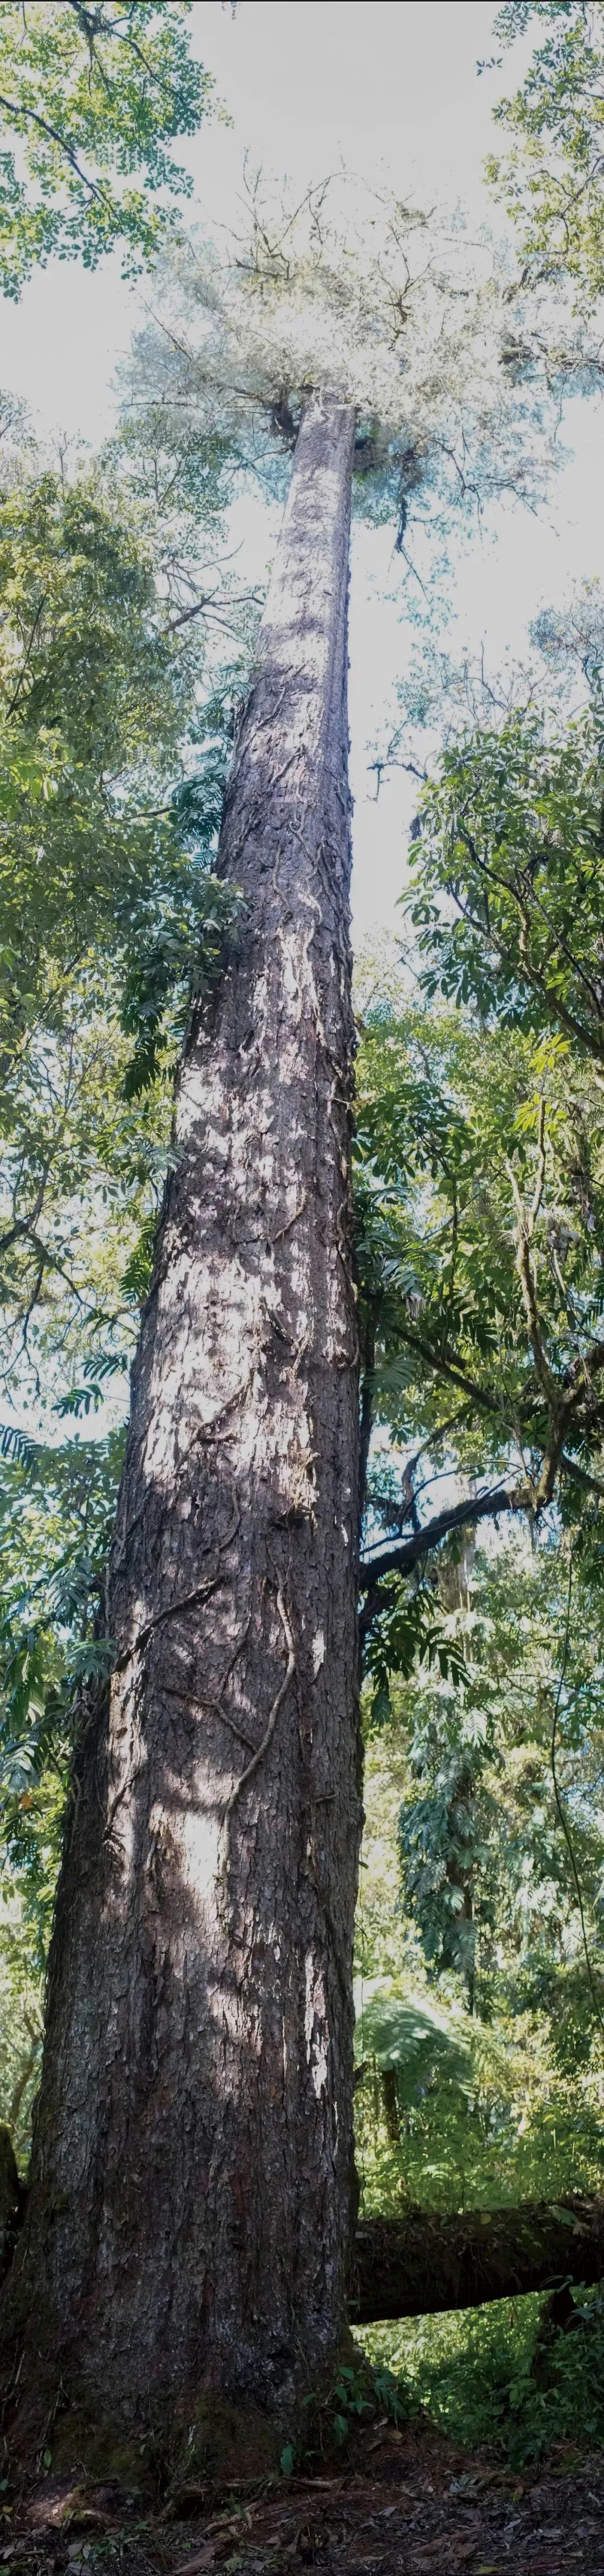 ▲5月8日，辛达布被确定为中国大陆当时已知的最高树，高约76.8米，它位于墨脱的原始森林，身上长满了附生植物